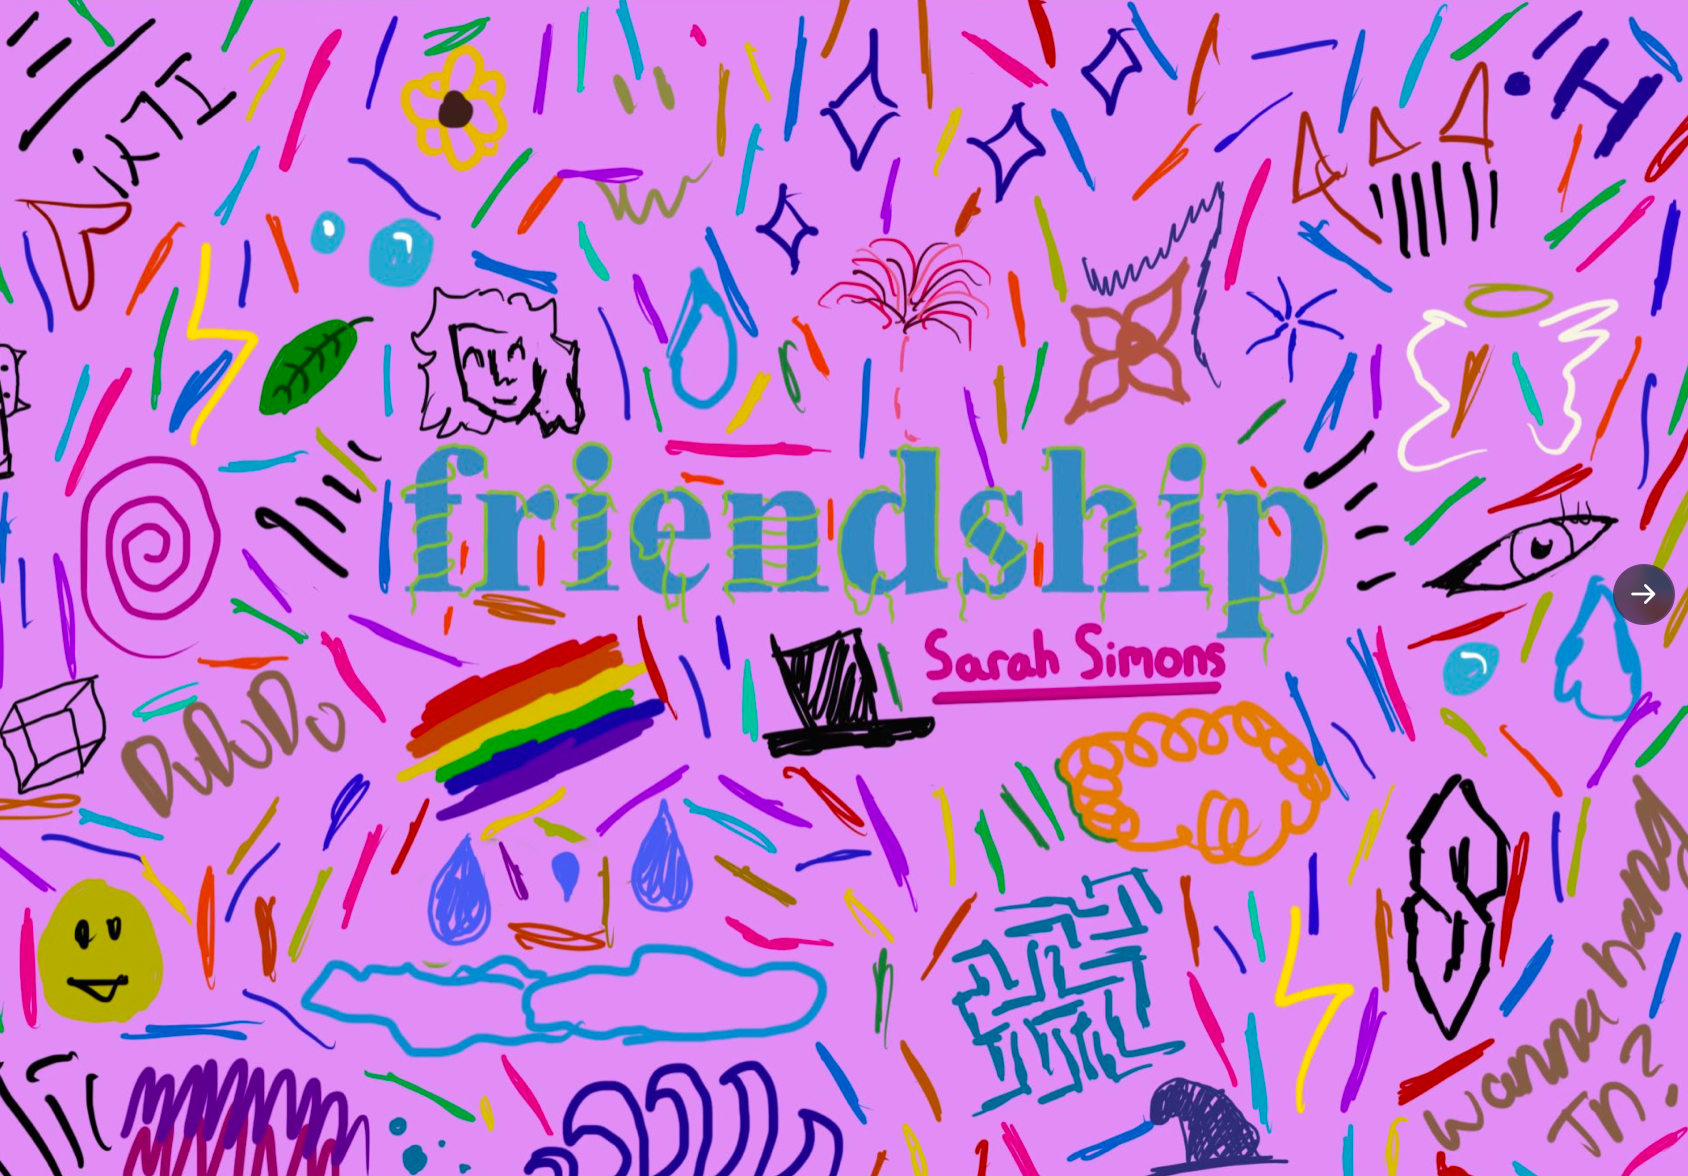 Friendship Gallery